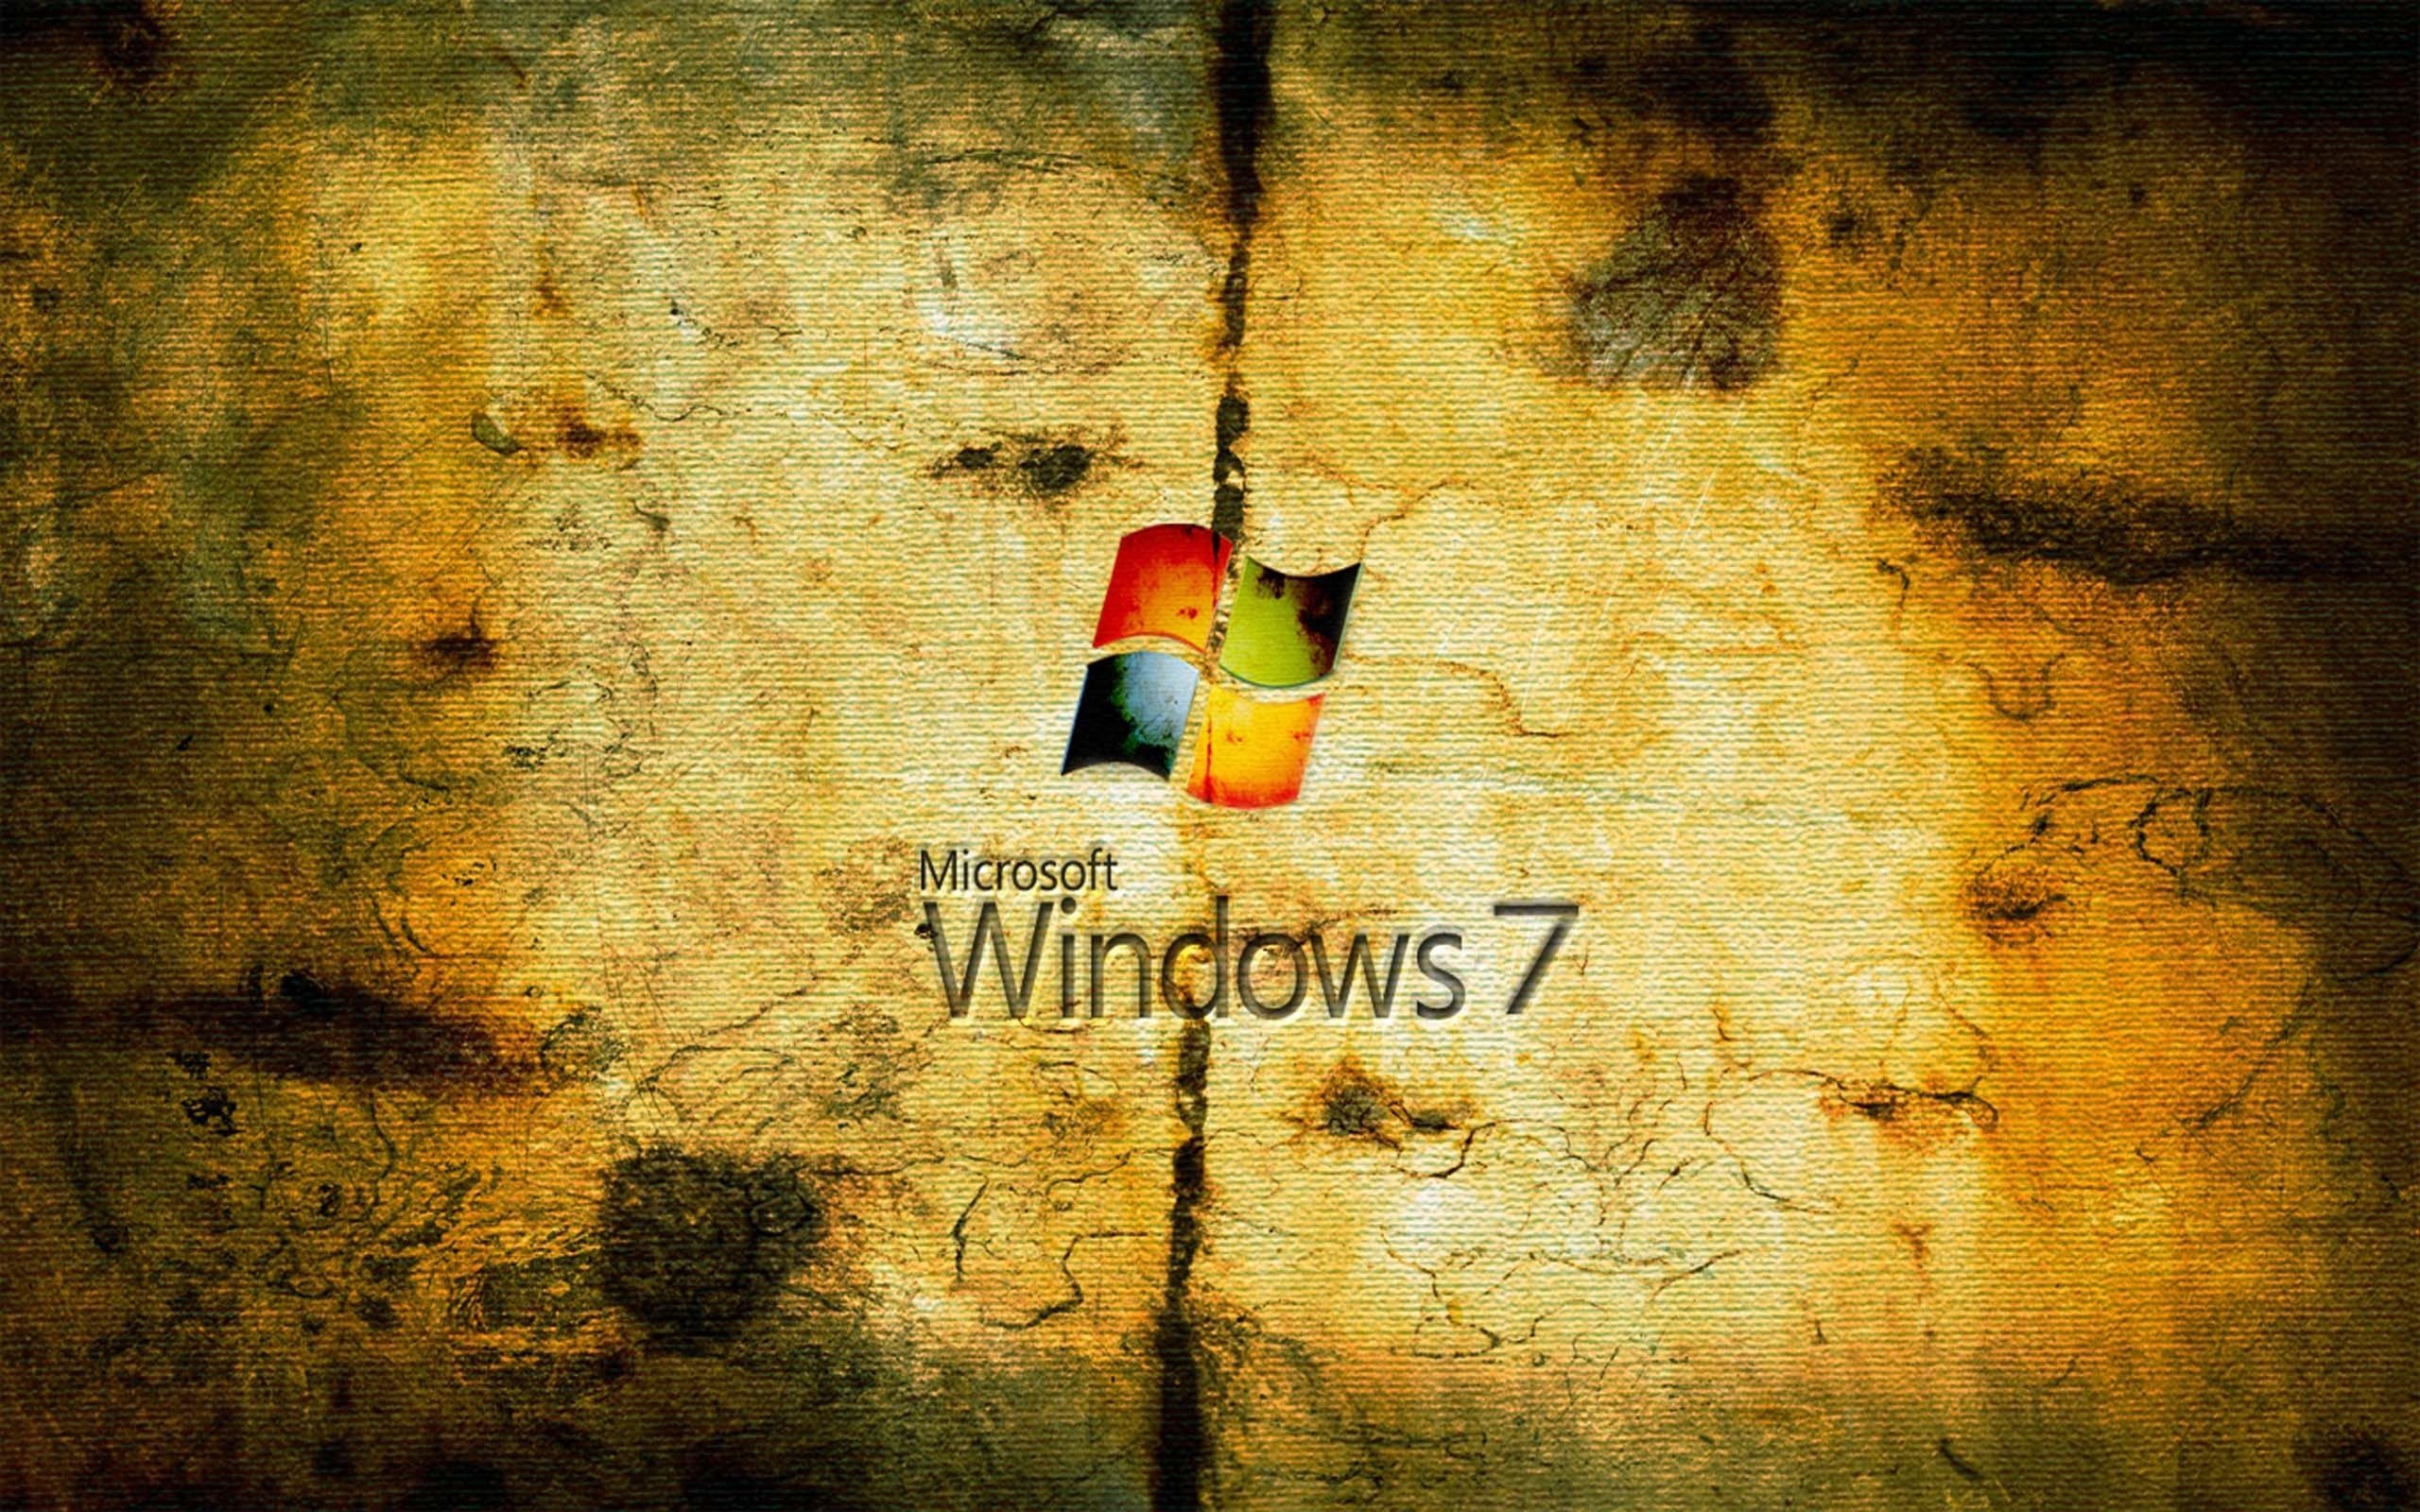 ダウンロード画像 セイバー Windows 七 Windows7 ロゴ グランジ 古紙 Se7en 画面の解像度 2560x1600 壁紙デスクトップ上